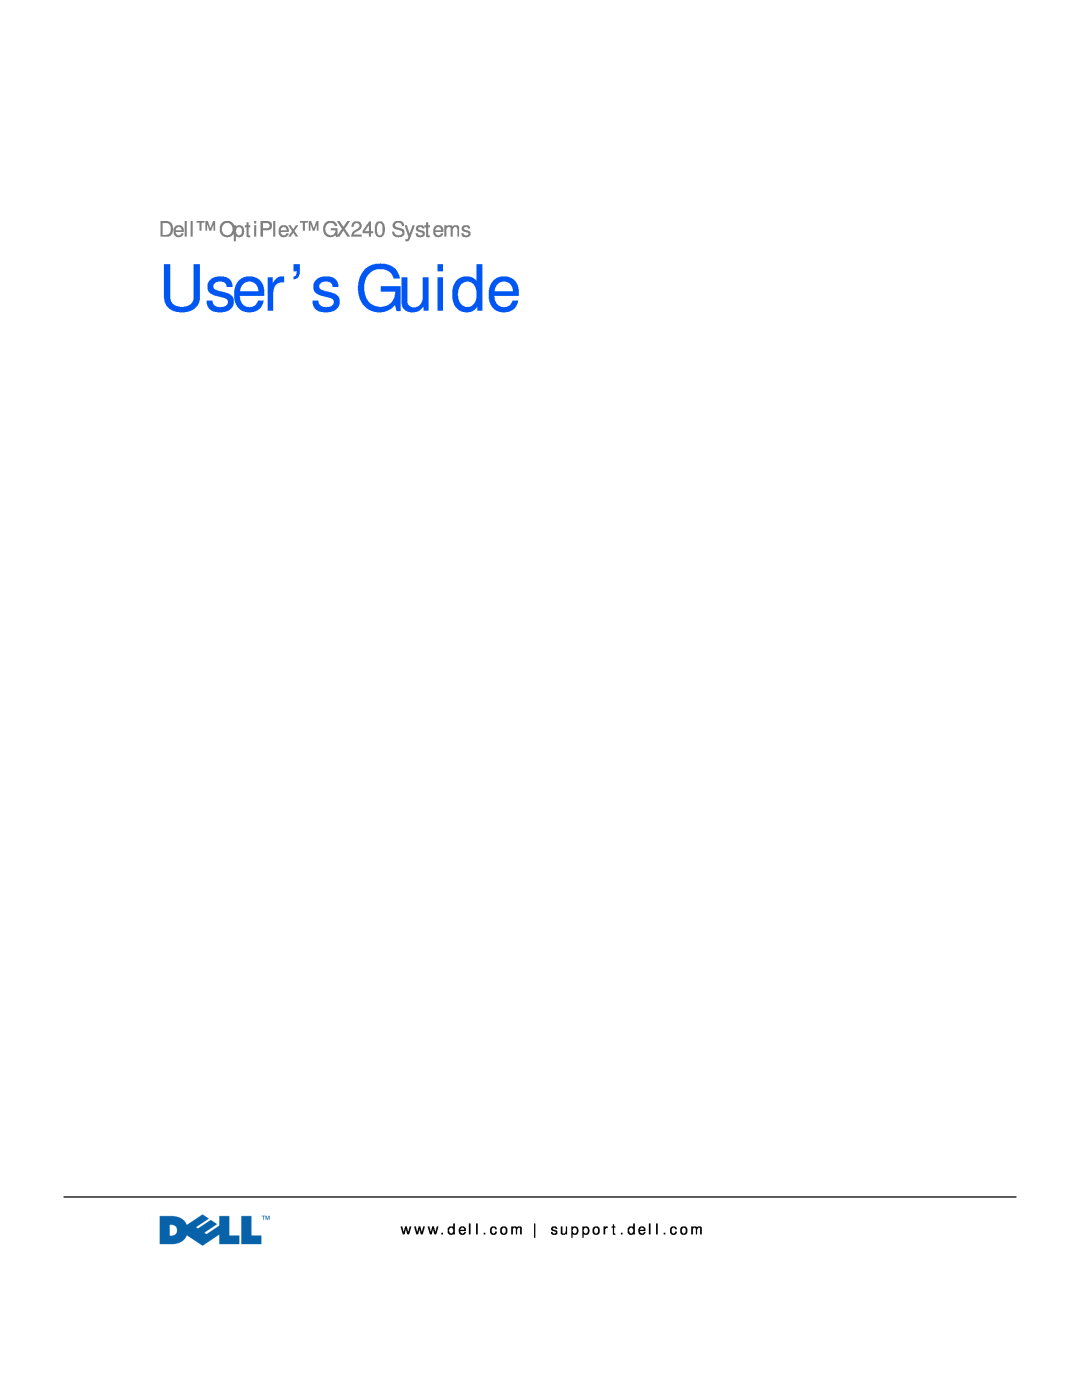 Dell manual User’s Guide, Dell OptiPlex GX240 Systems 